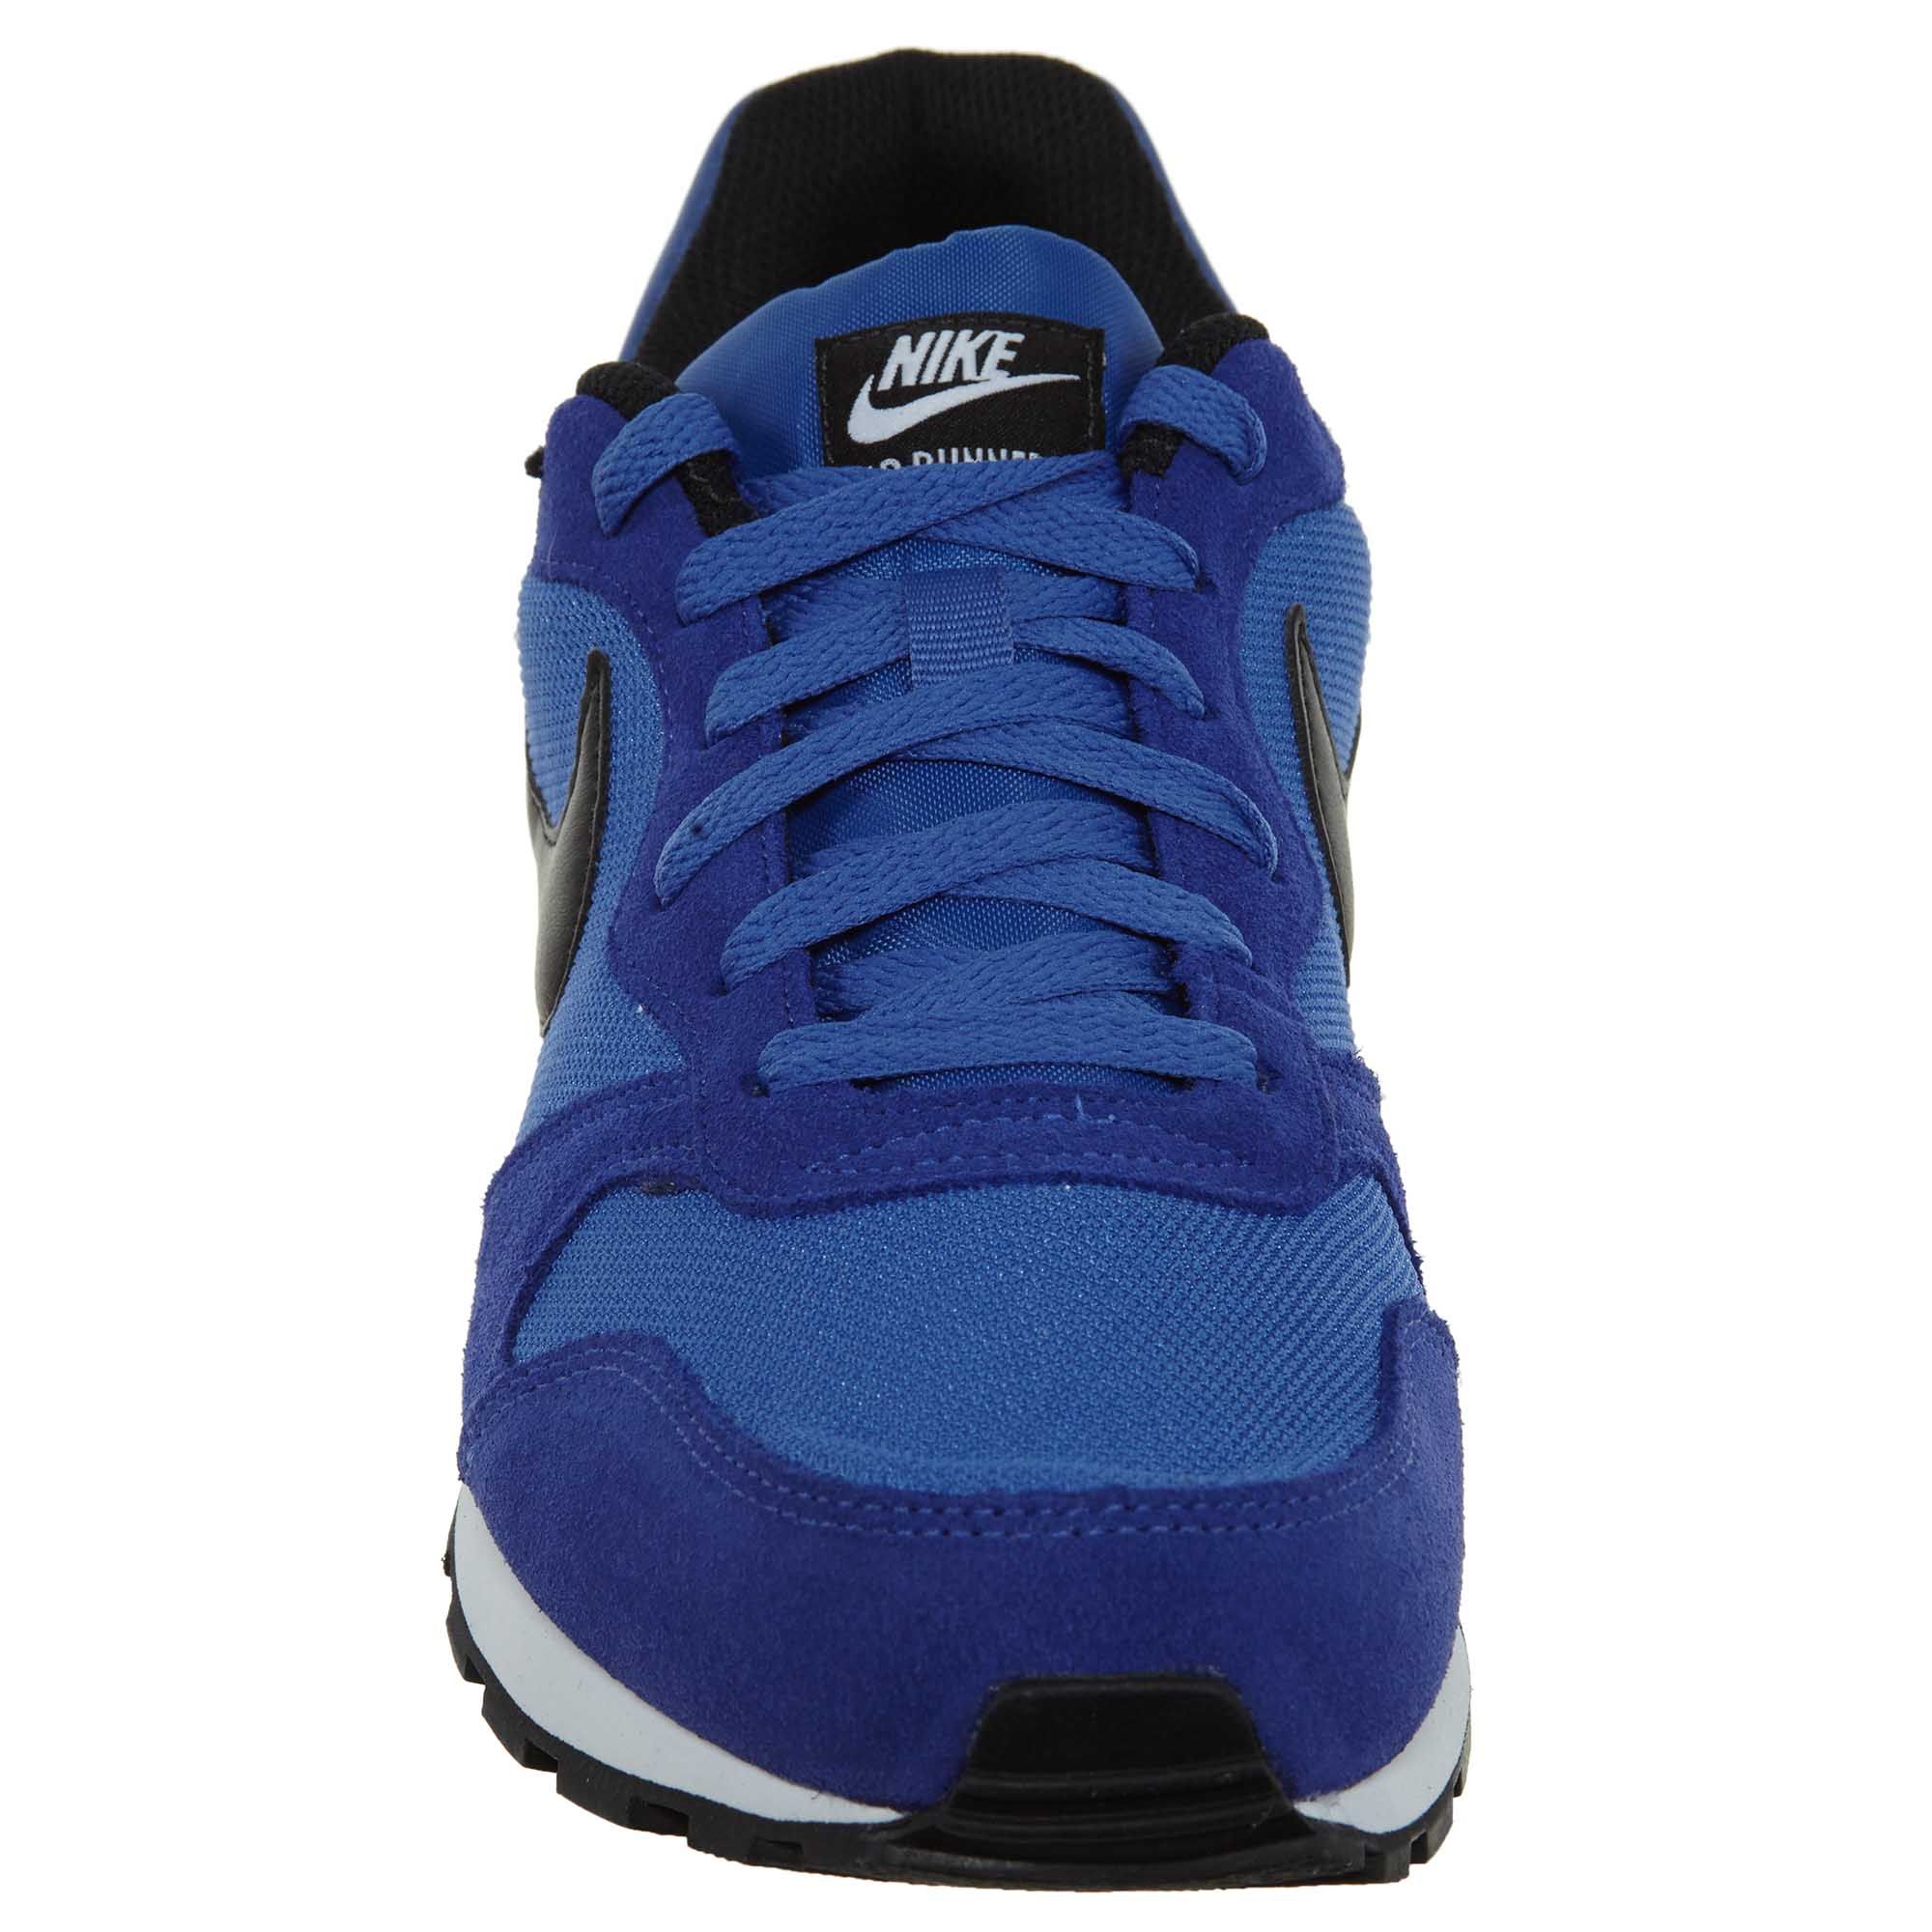 Nike Md Runner 2 Mens Style : 749794-400